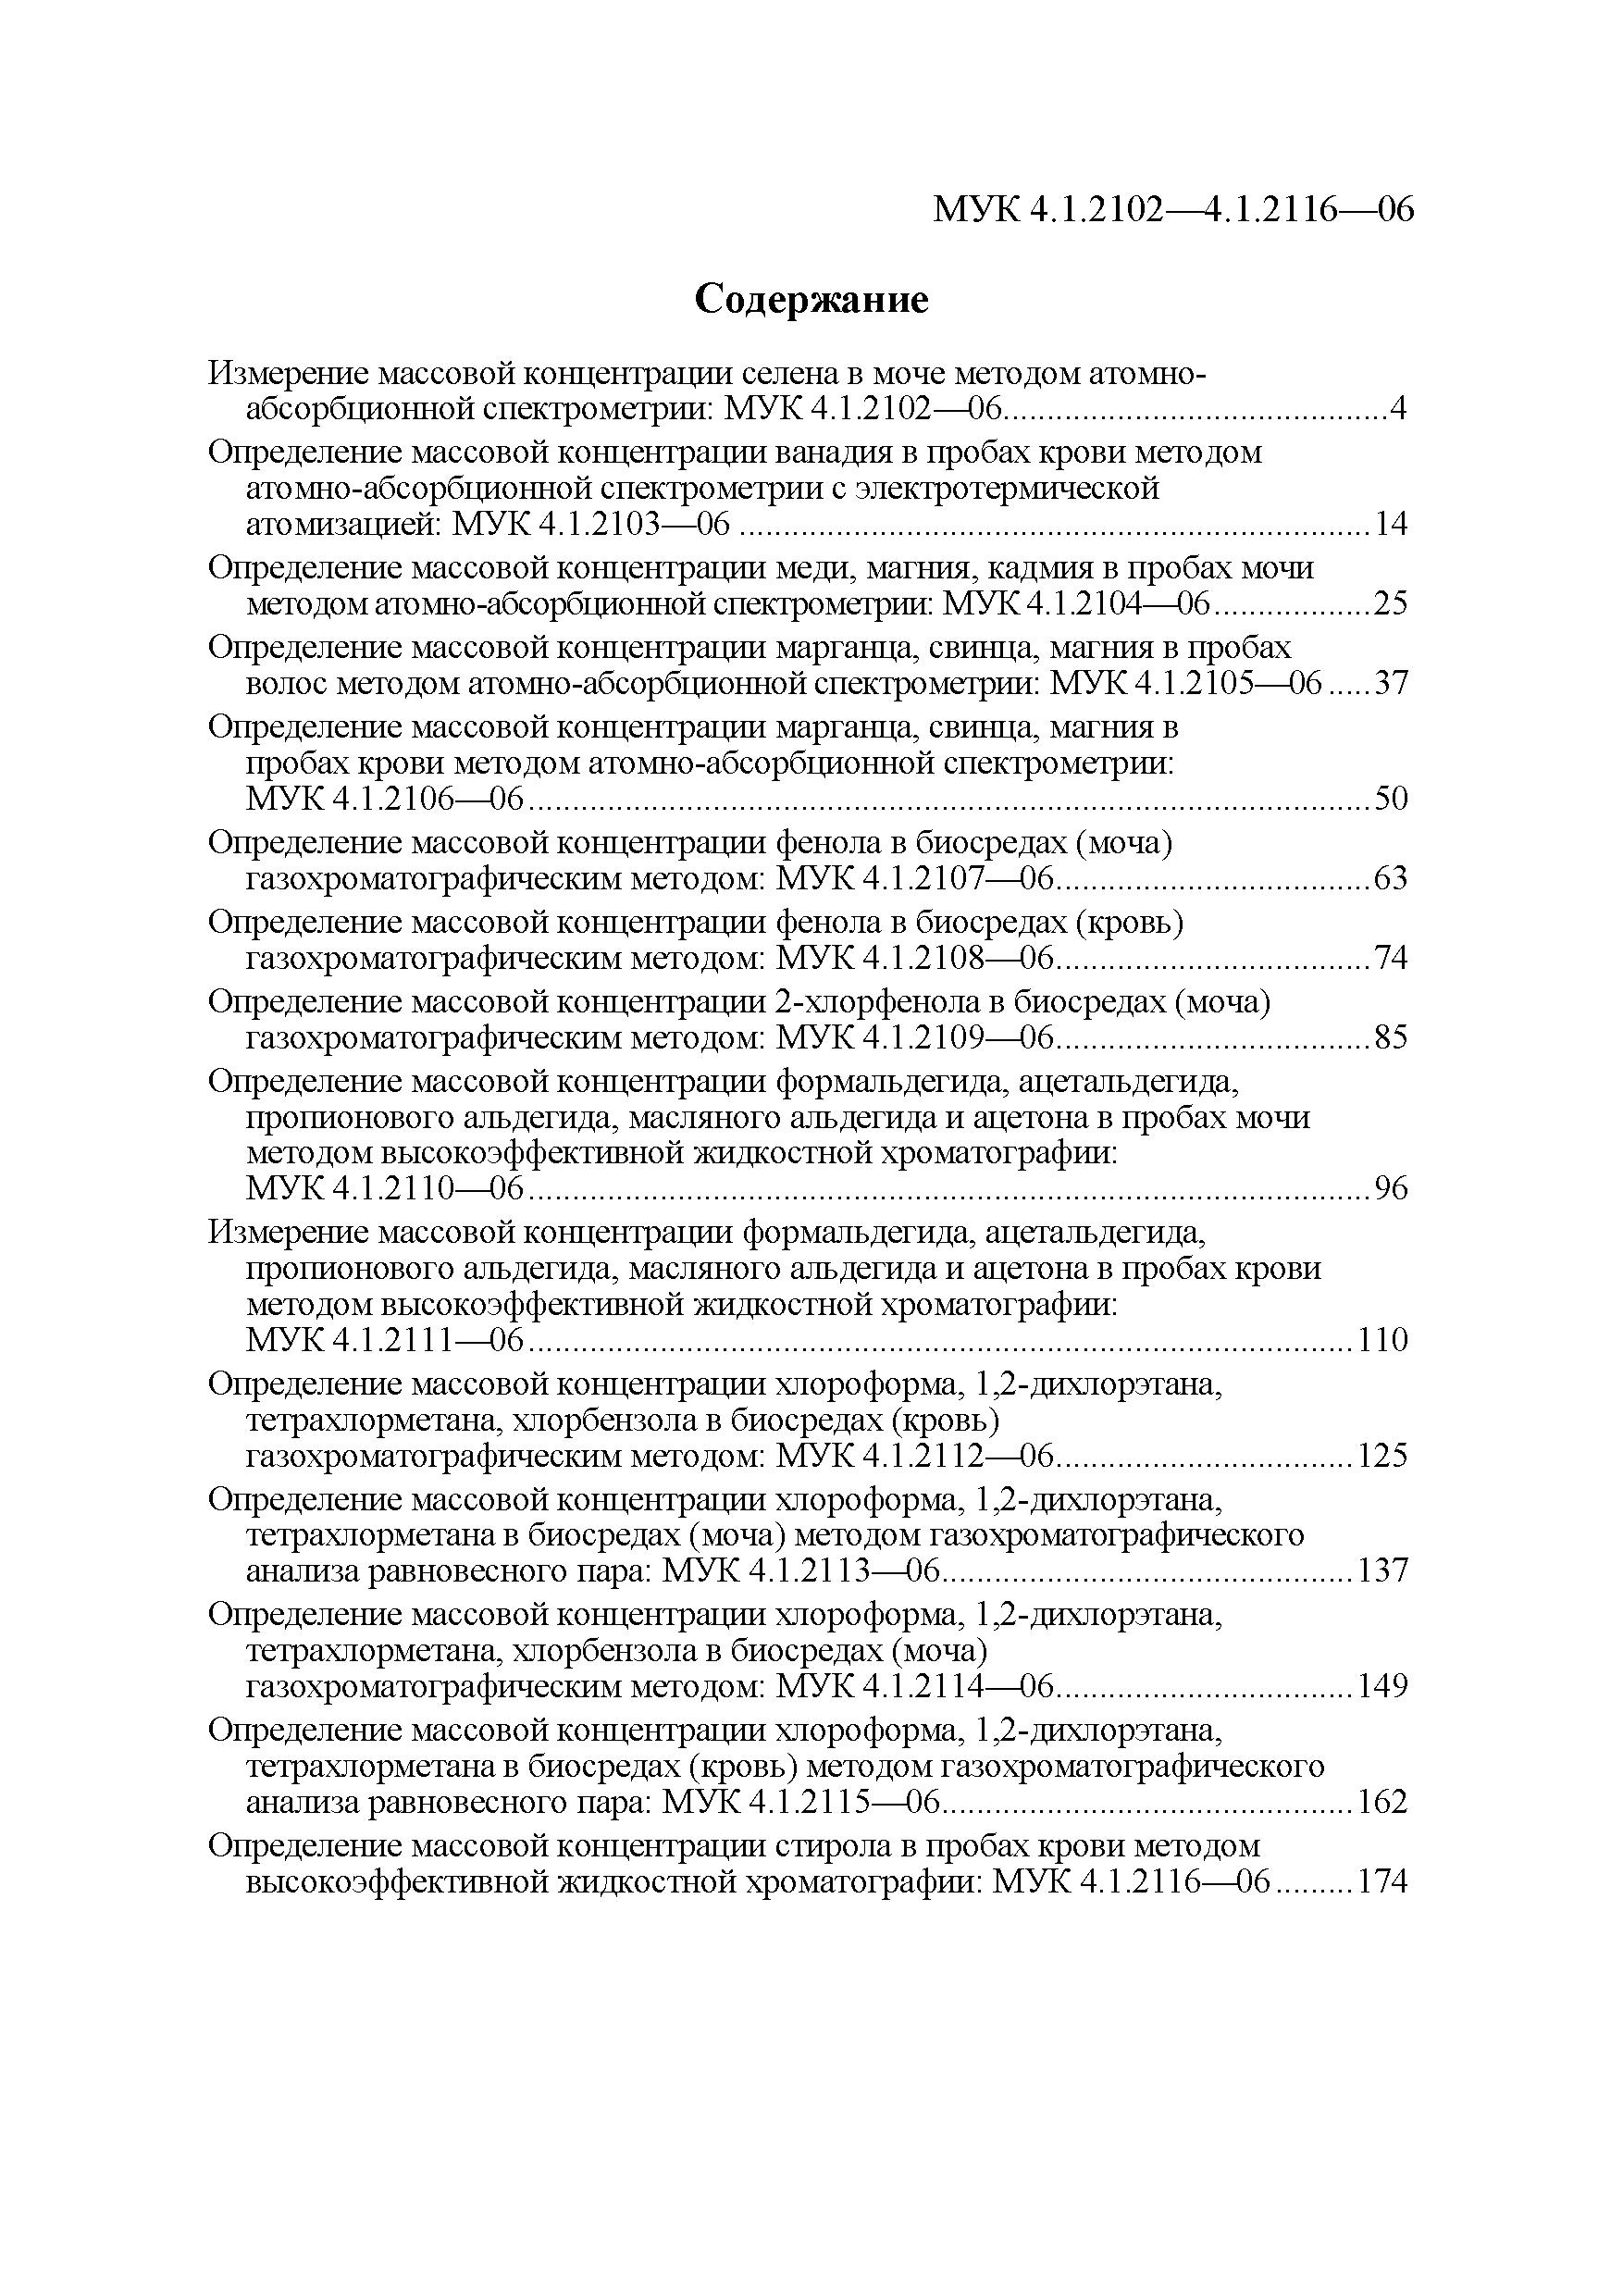 МУК 4.1.2111-06